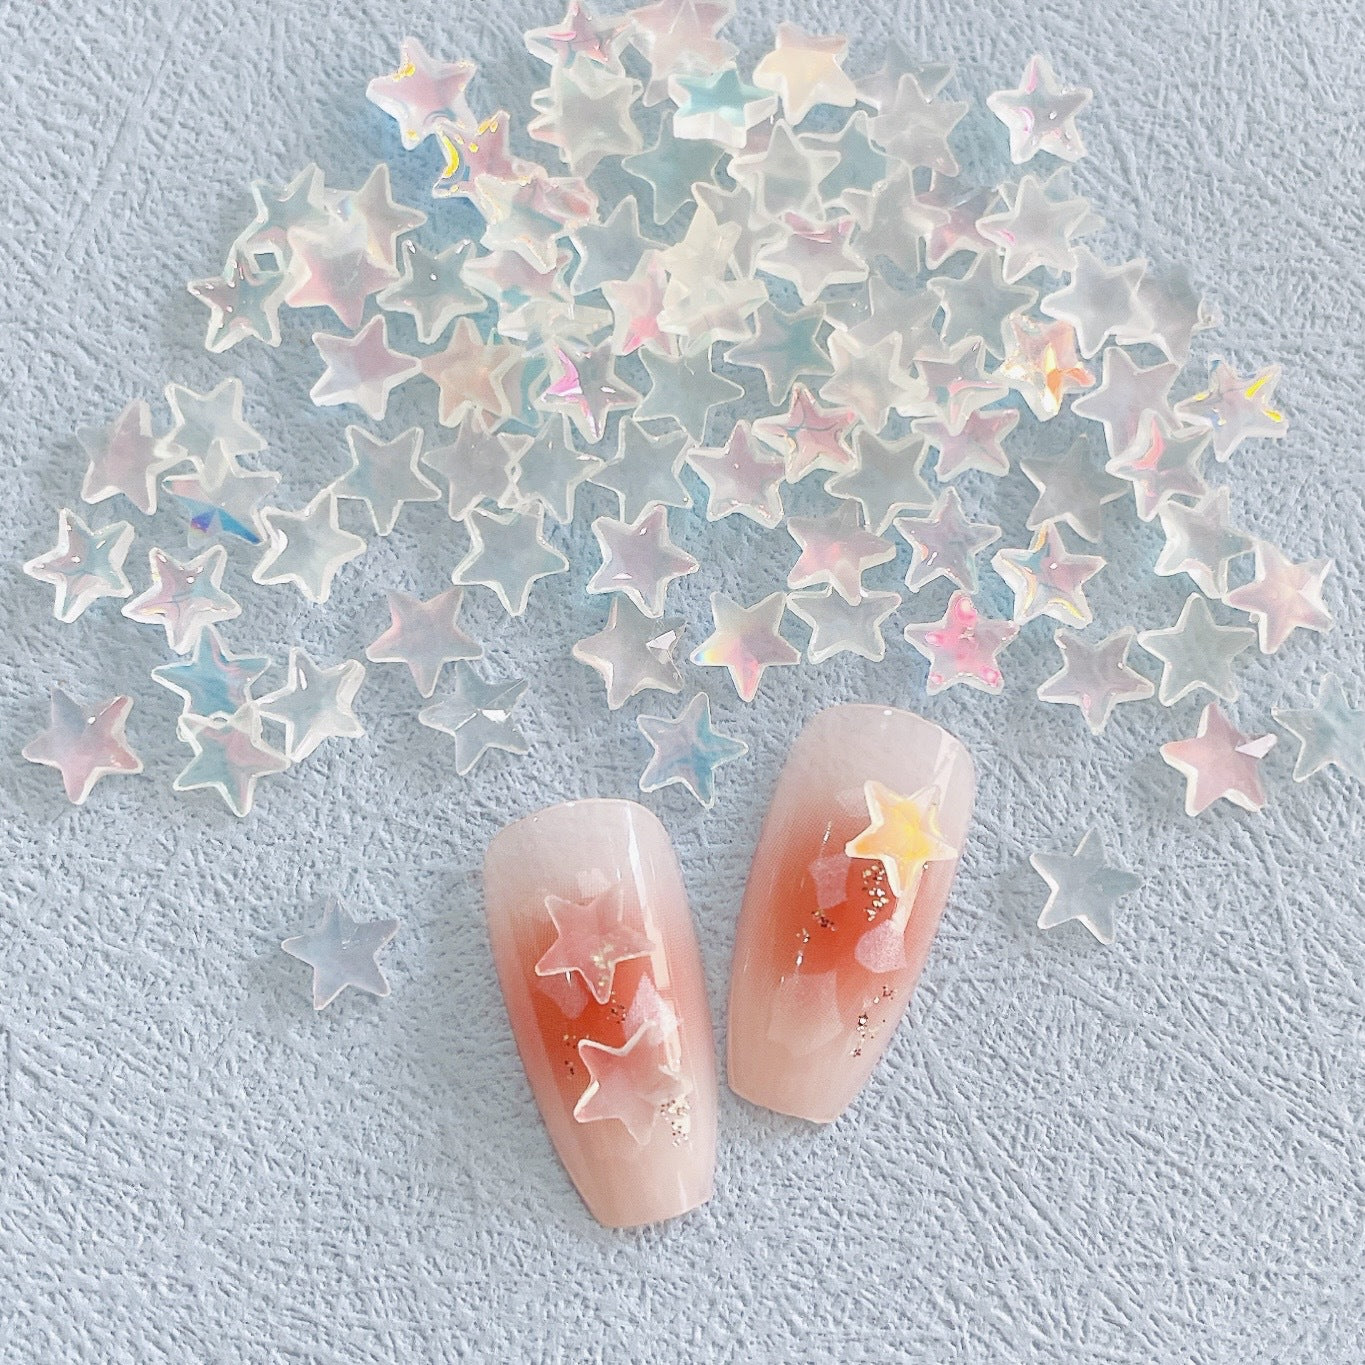 Nuevo en línea hielo rojo transparente colorido estrella de cinco puntas adorno de uñas colorido y fresco XINGX accesorios de uñas de resina Diy